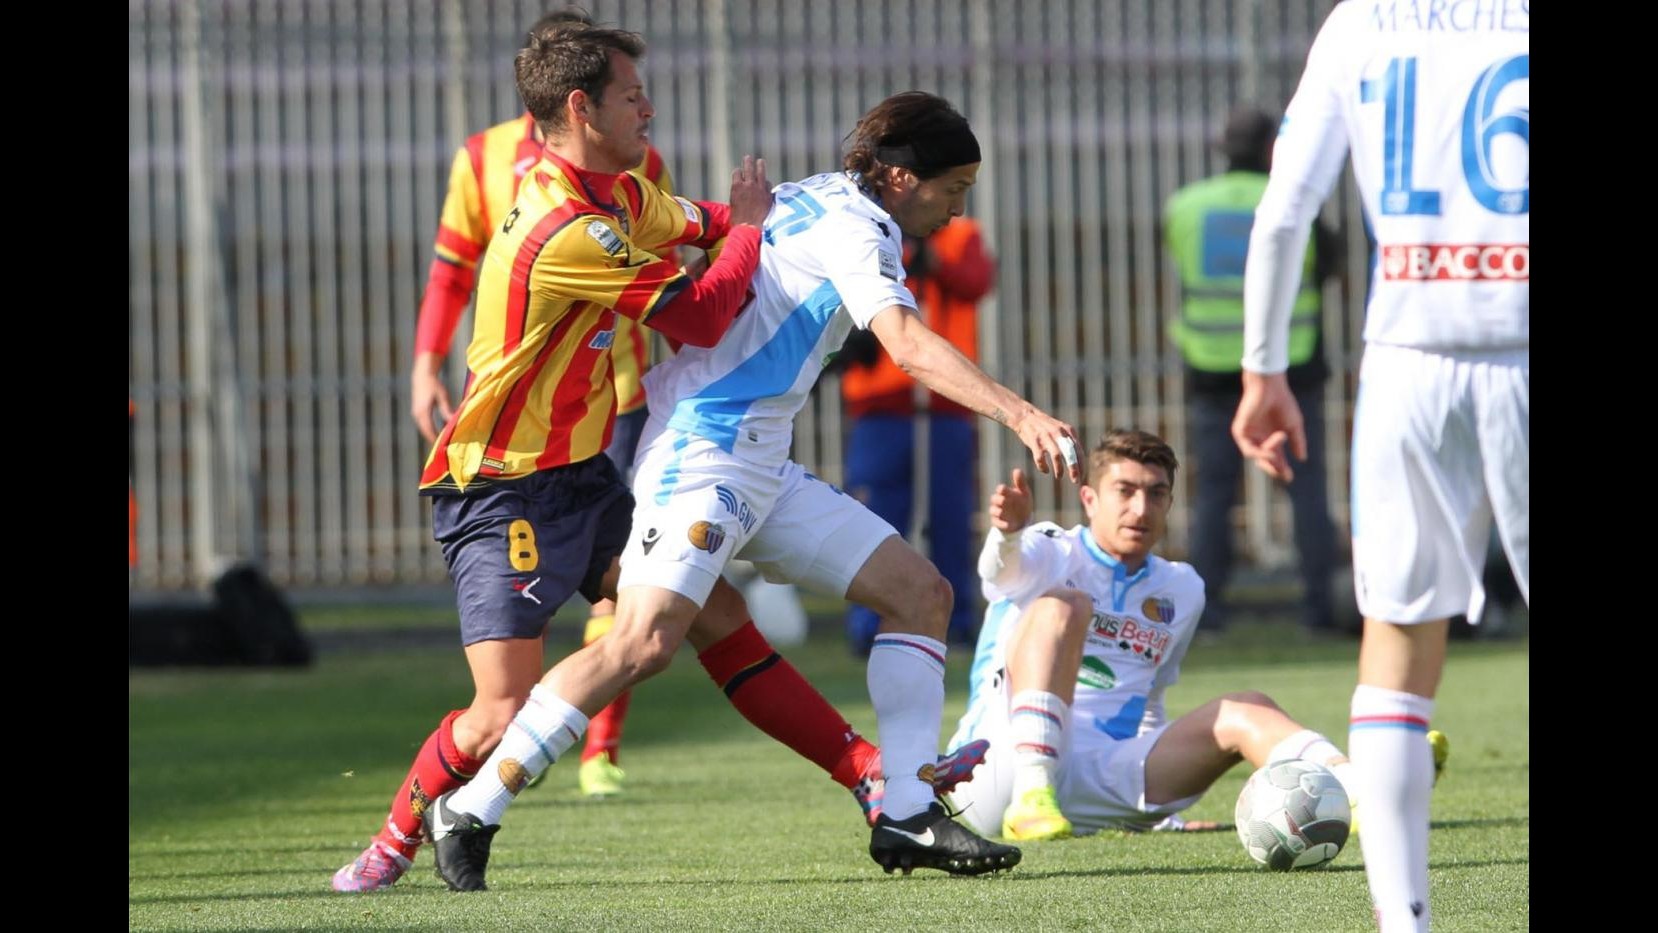 FOTO Lega Pro, Lecce-Catania 1-0